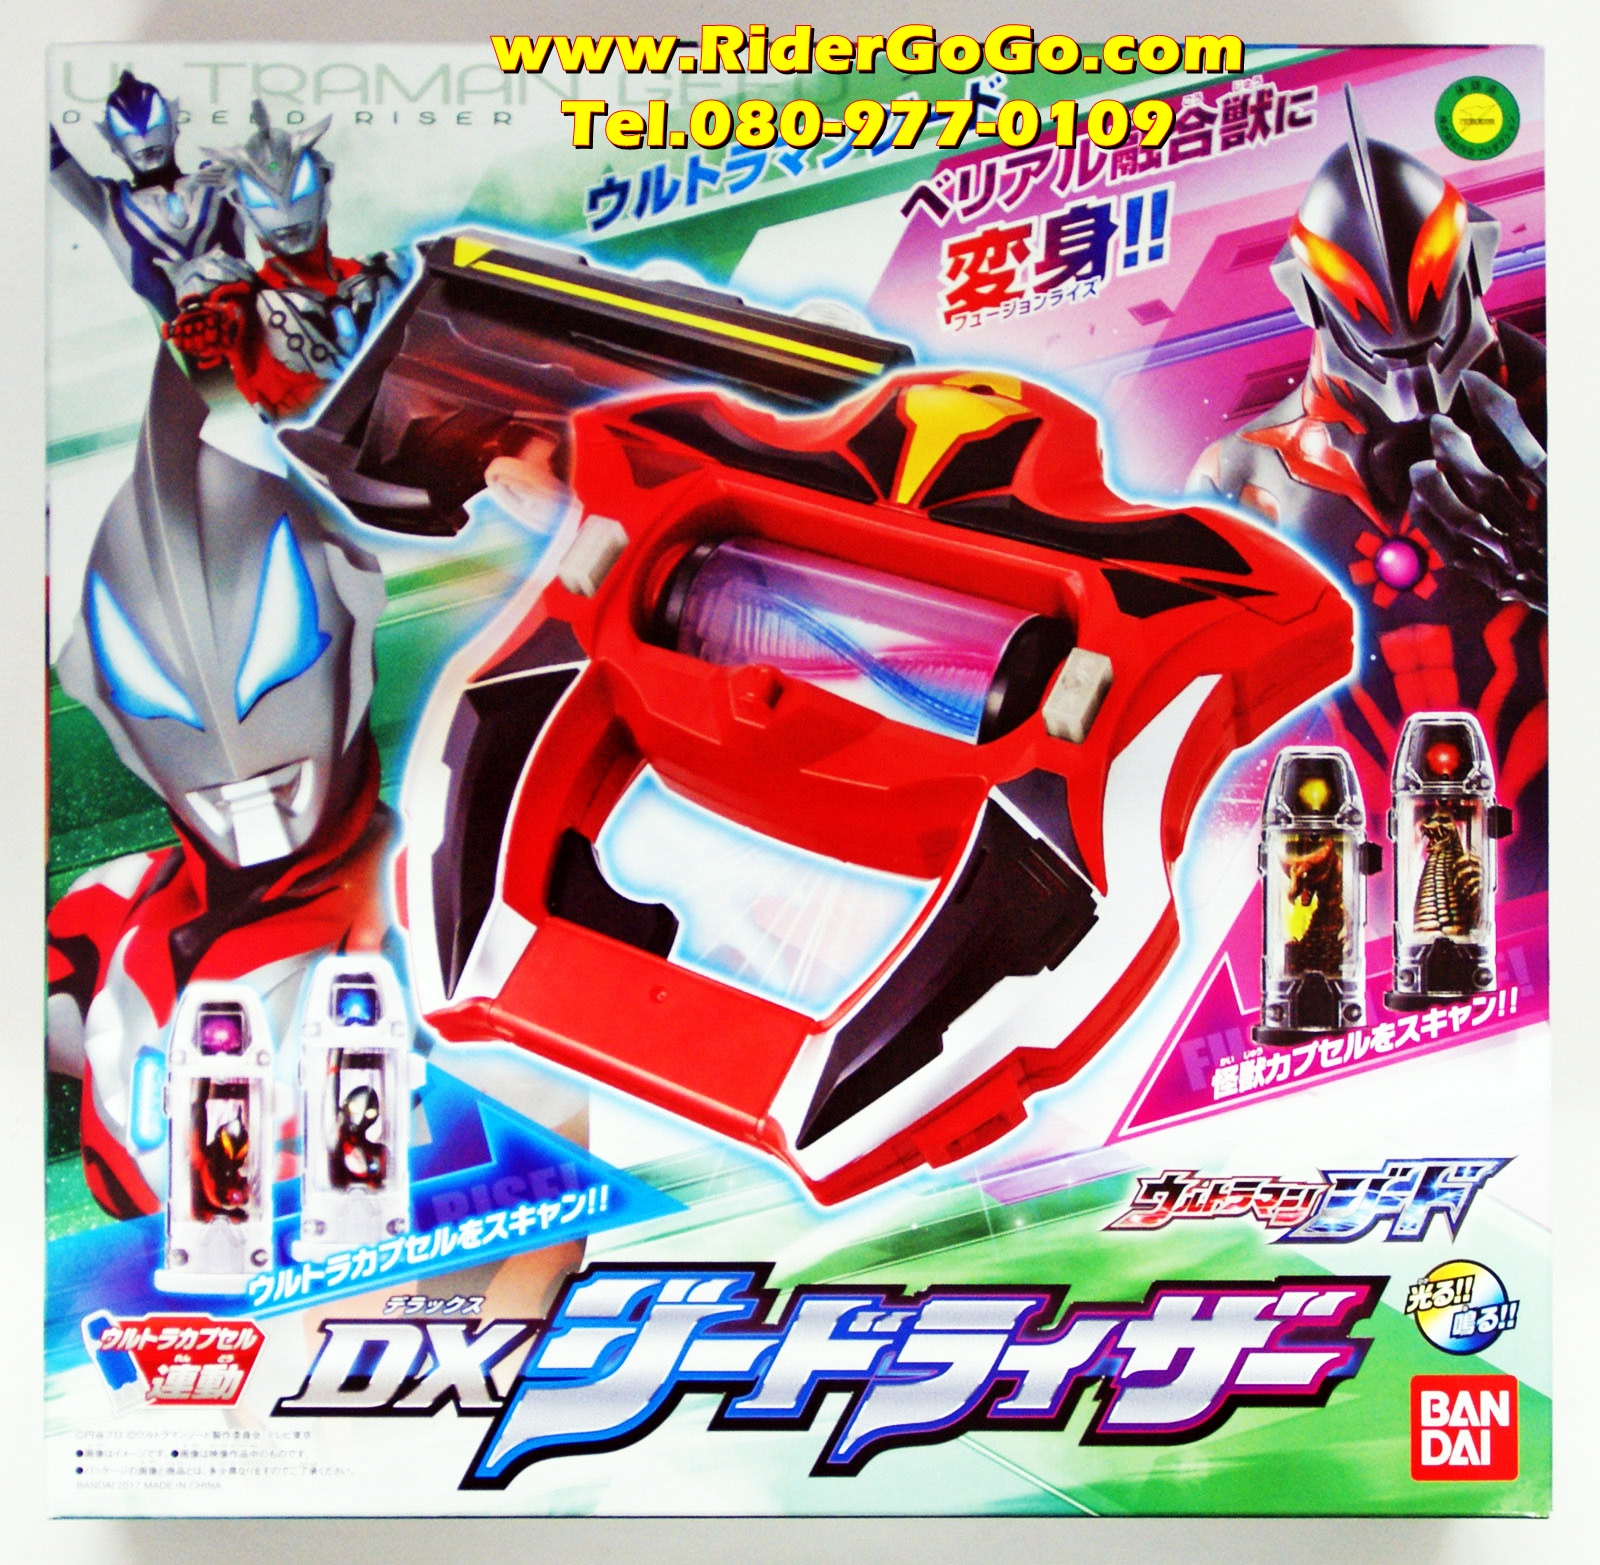 ที่แปลงร่างอุลตร้าแมนจี๊ด จี๊ดไรเซอร์ Ultraman GEED DX Geed Riser ของใหม่ของแท้ลิขสิทธิ์Bandai ประเทศญี่ปุ่น รูปที่ 1